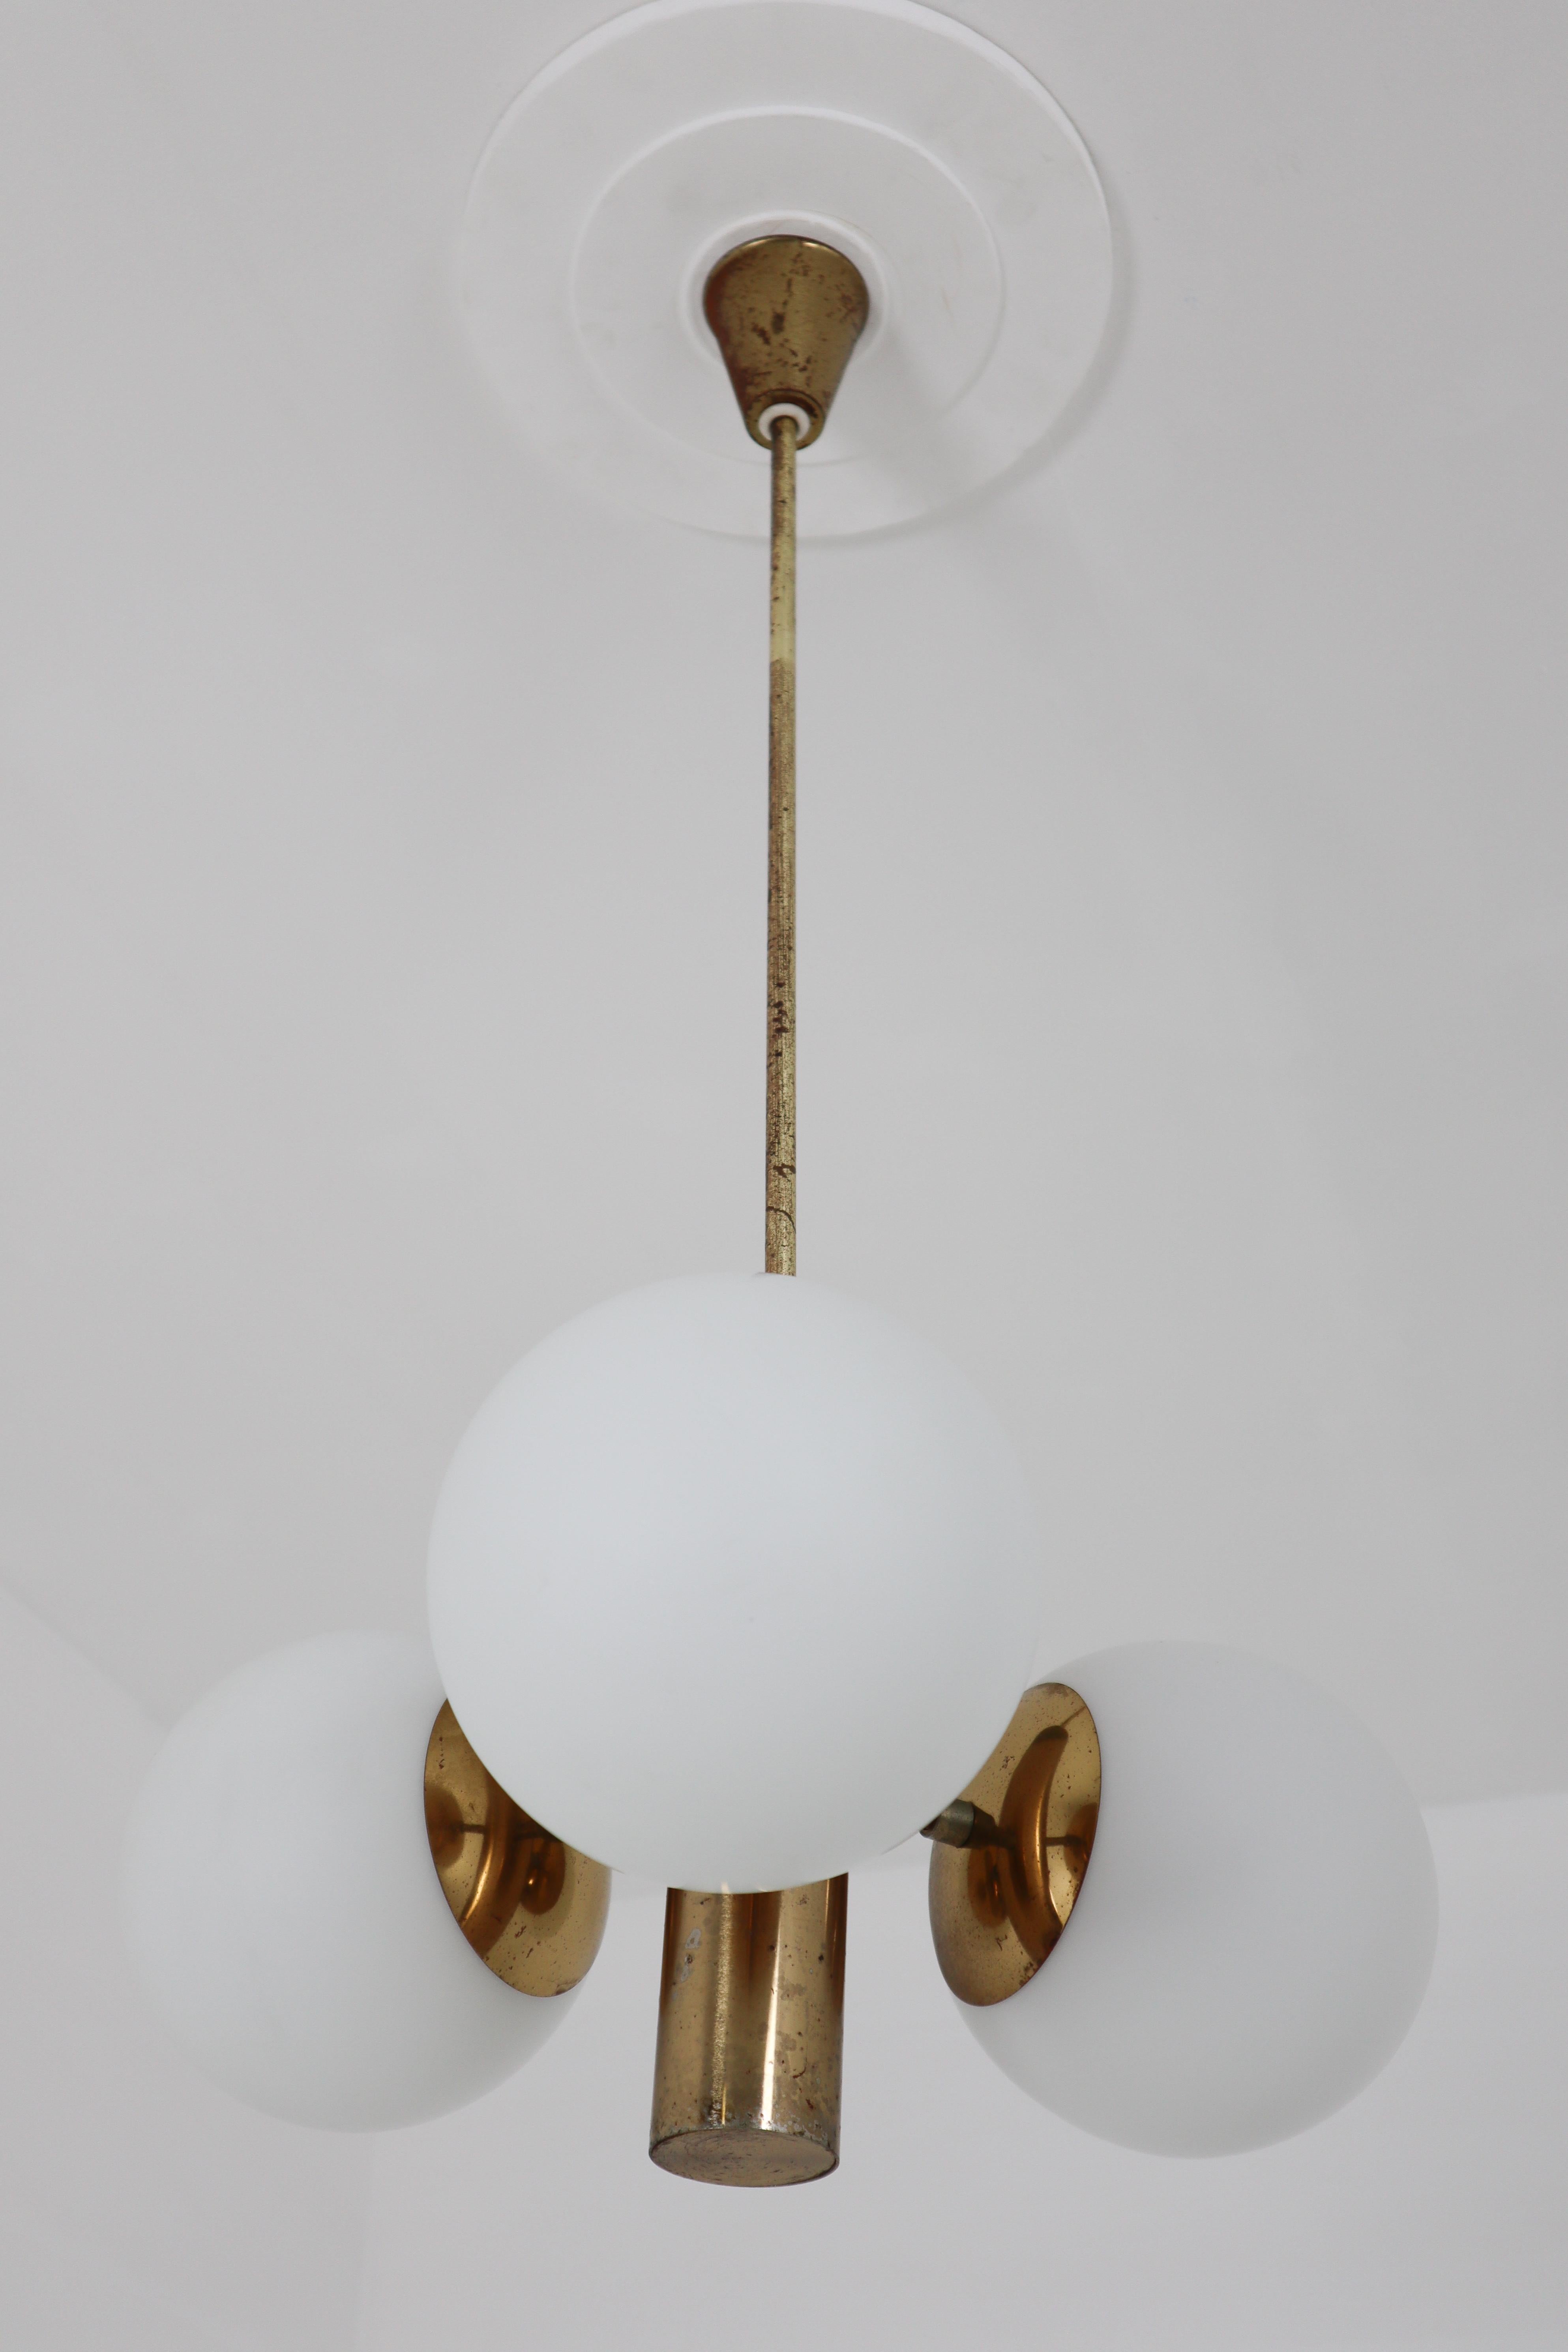 German Mid-Century Modernist Sputnik Chandelier with Three Handblown Glass Globes